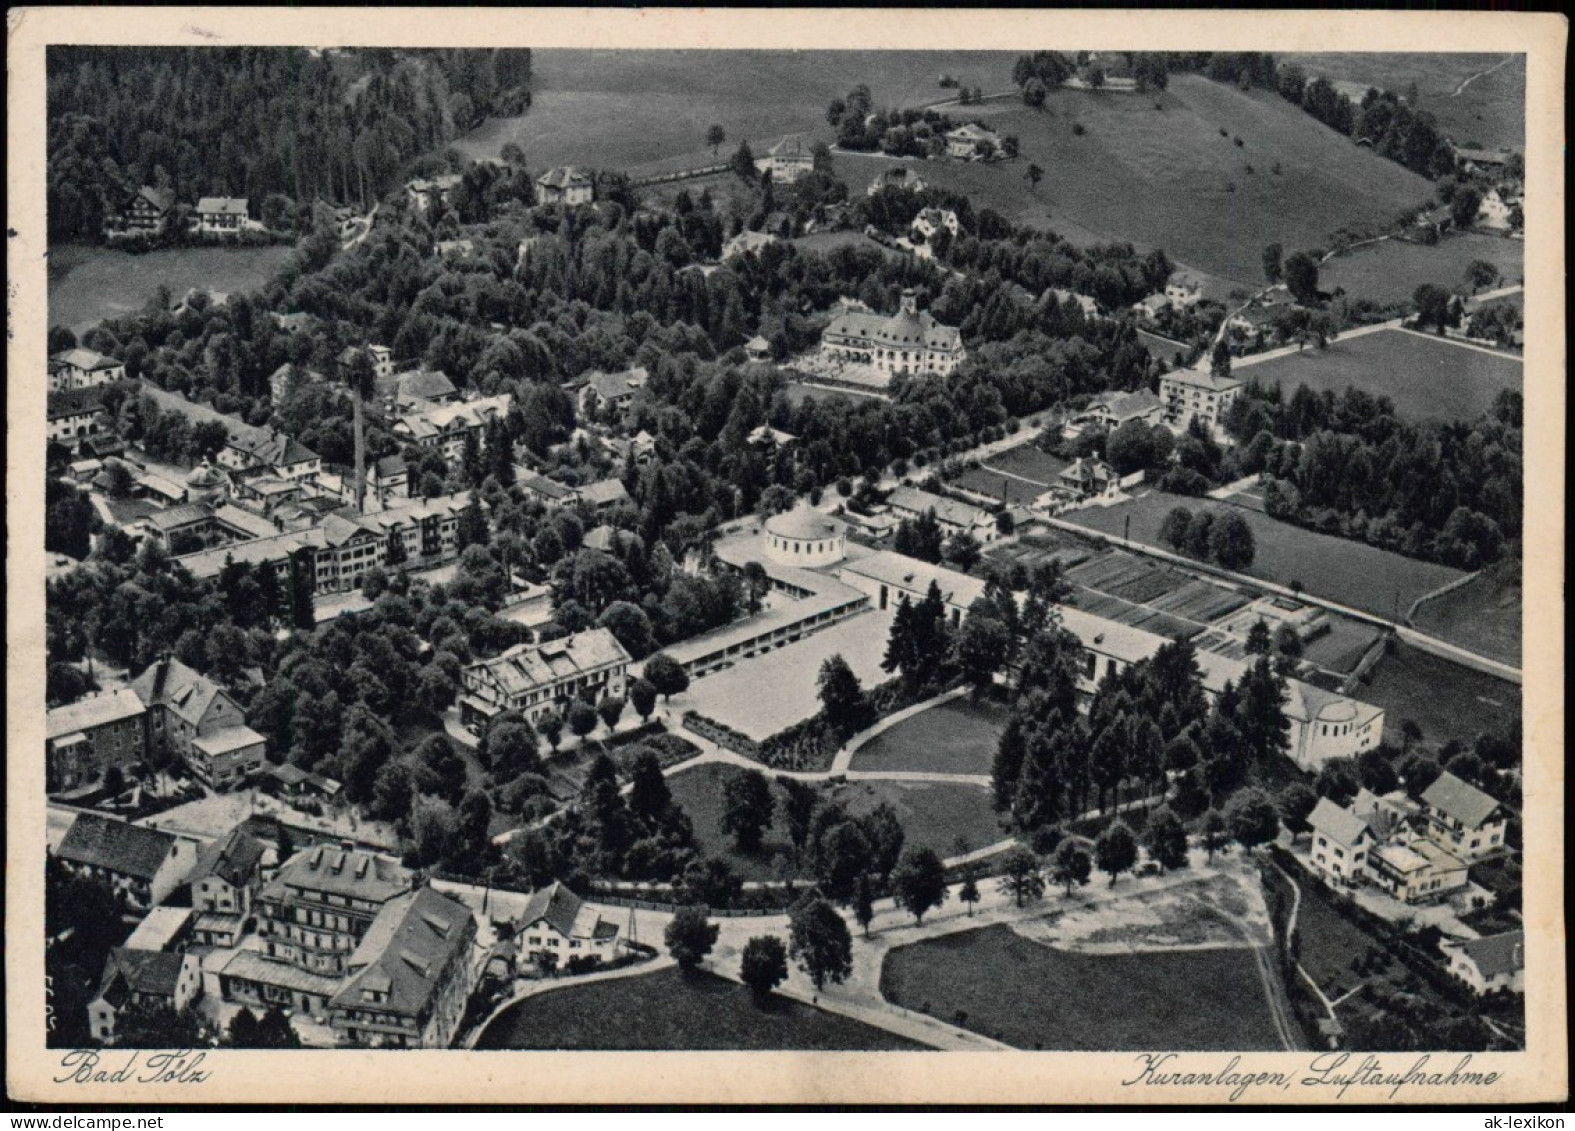 Ansichtskarte Bad Tölz Luftbild Kuranlagen, Luftaufnahme 1937 - Bad Toelz